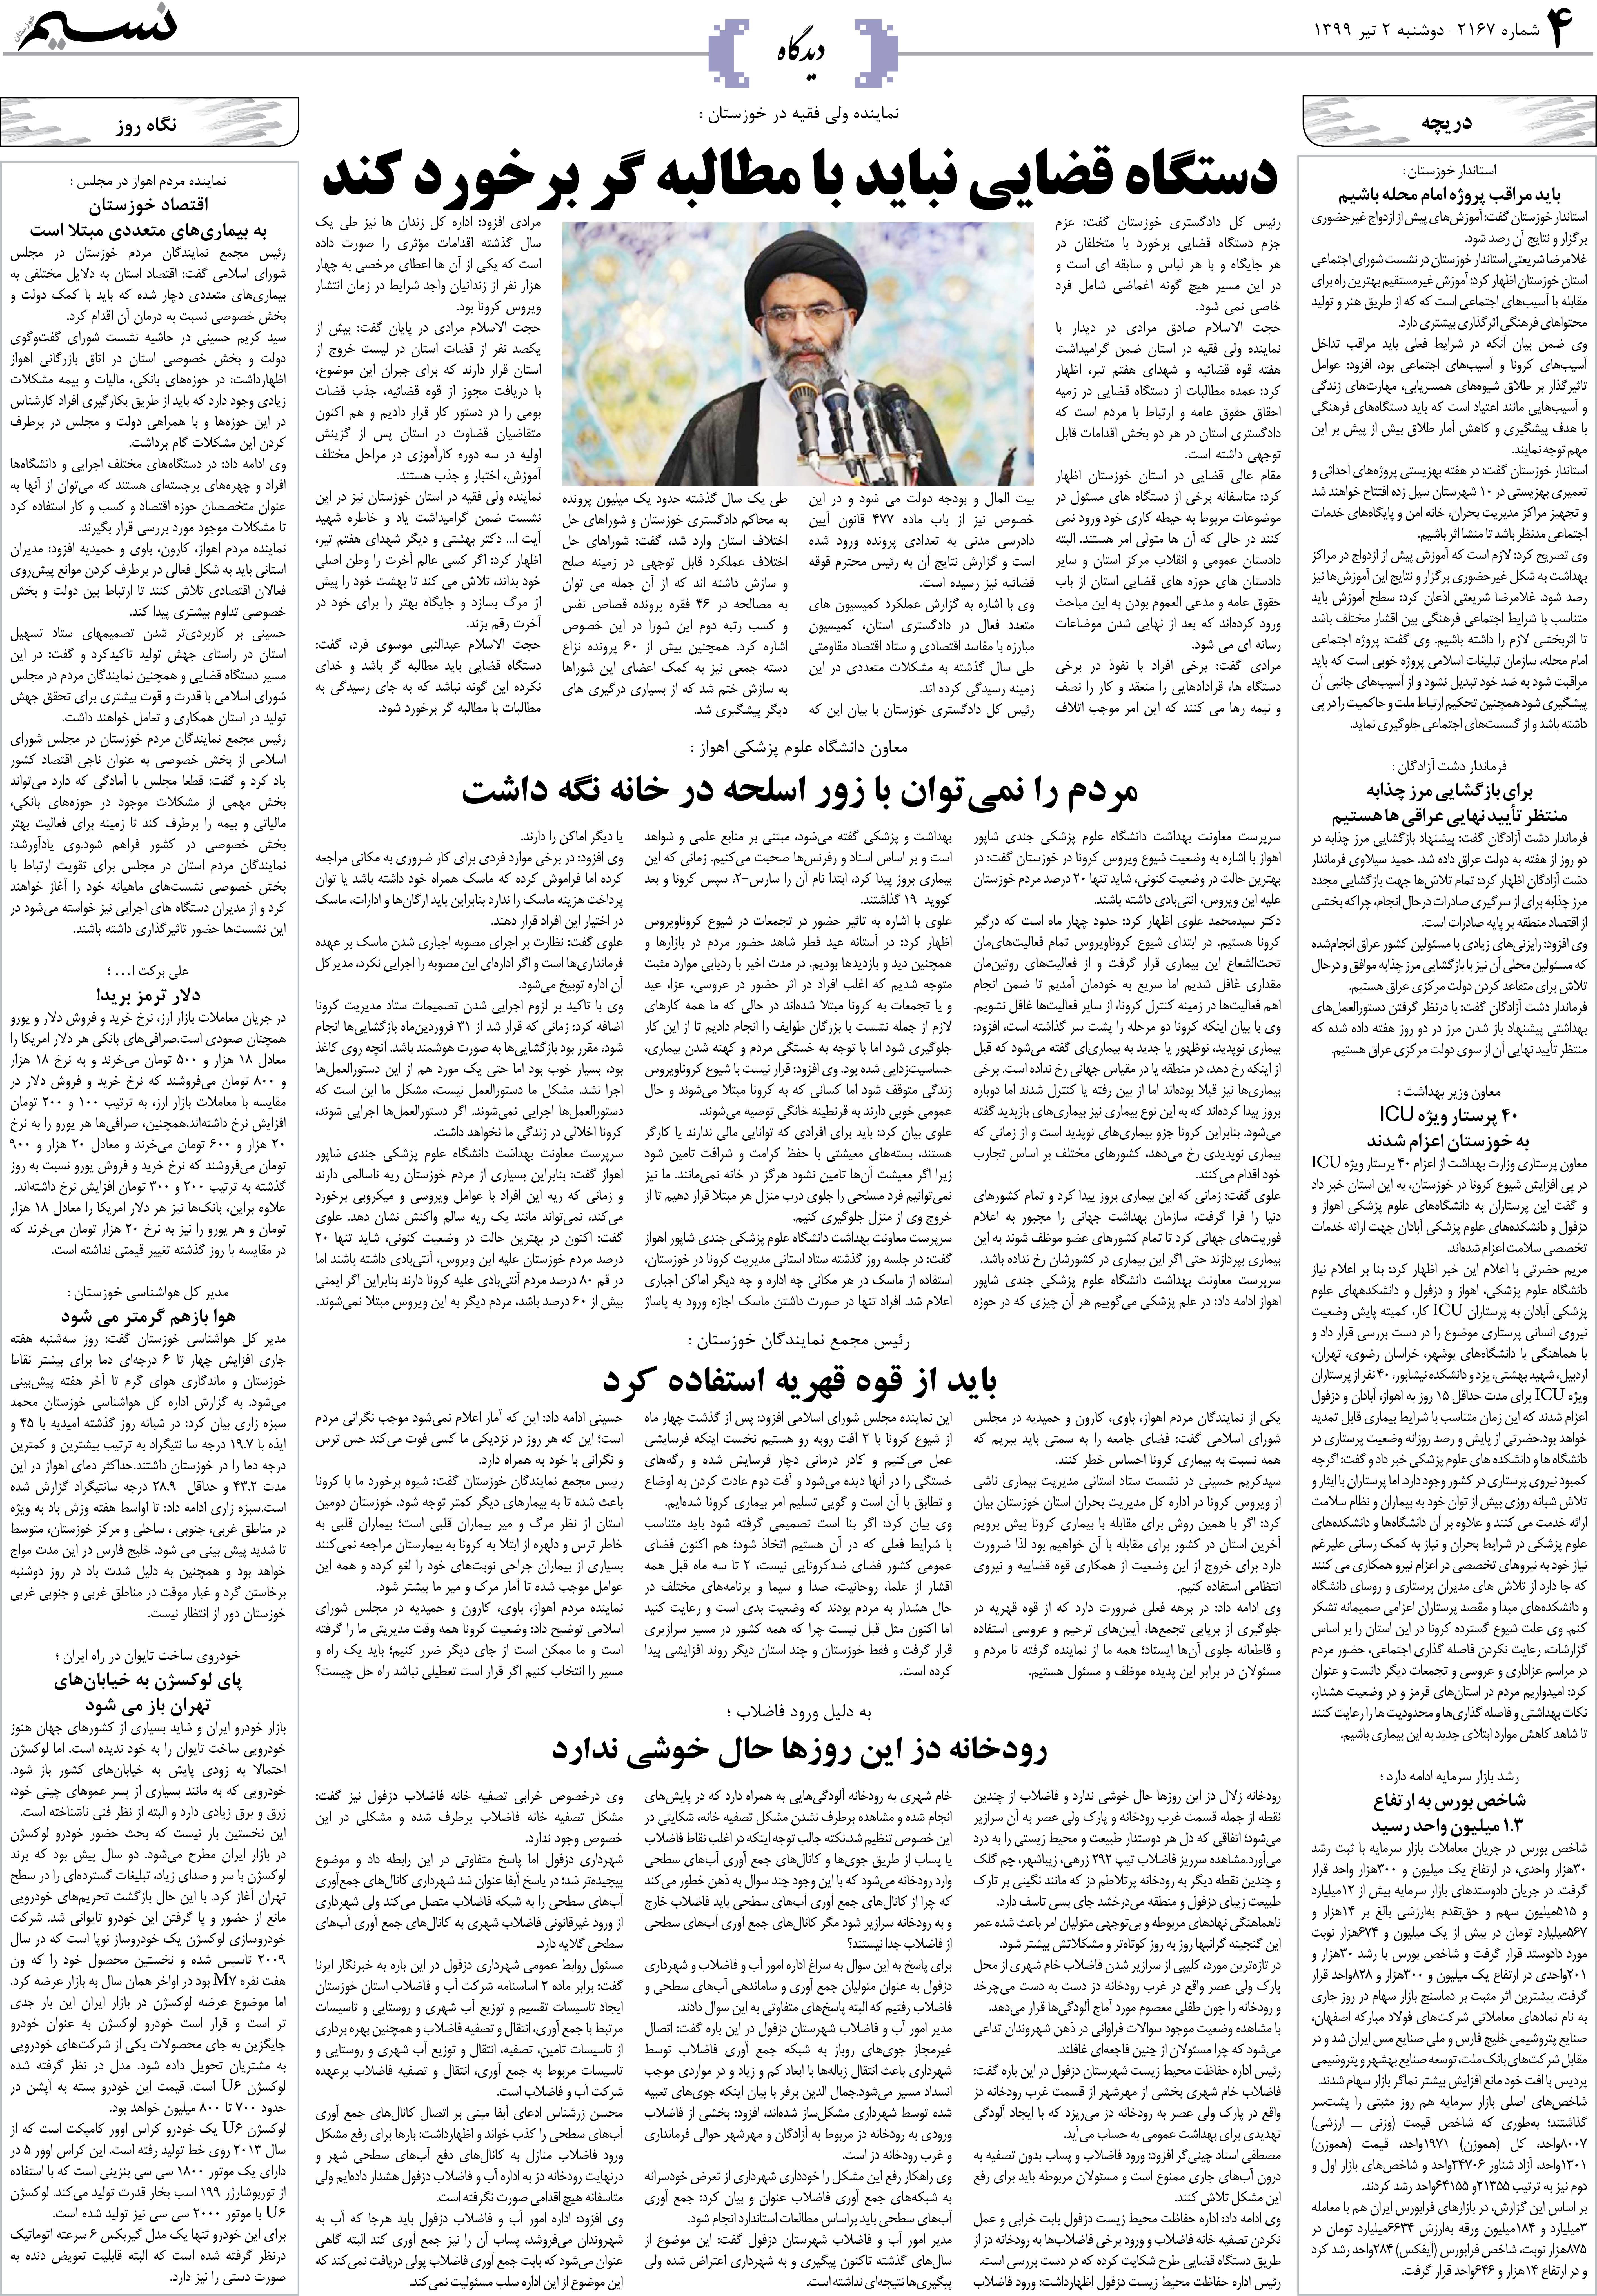 صفحه دیدگاه روزنامه نسیم شماره 2167